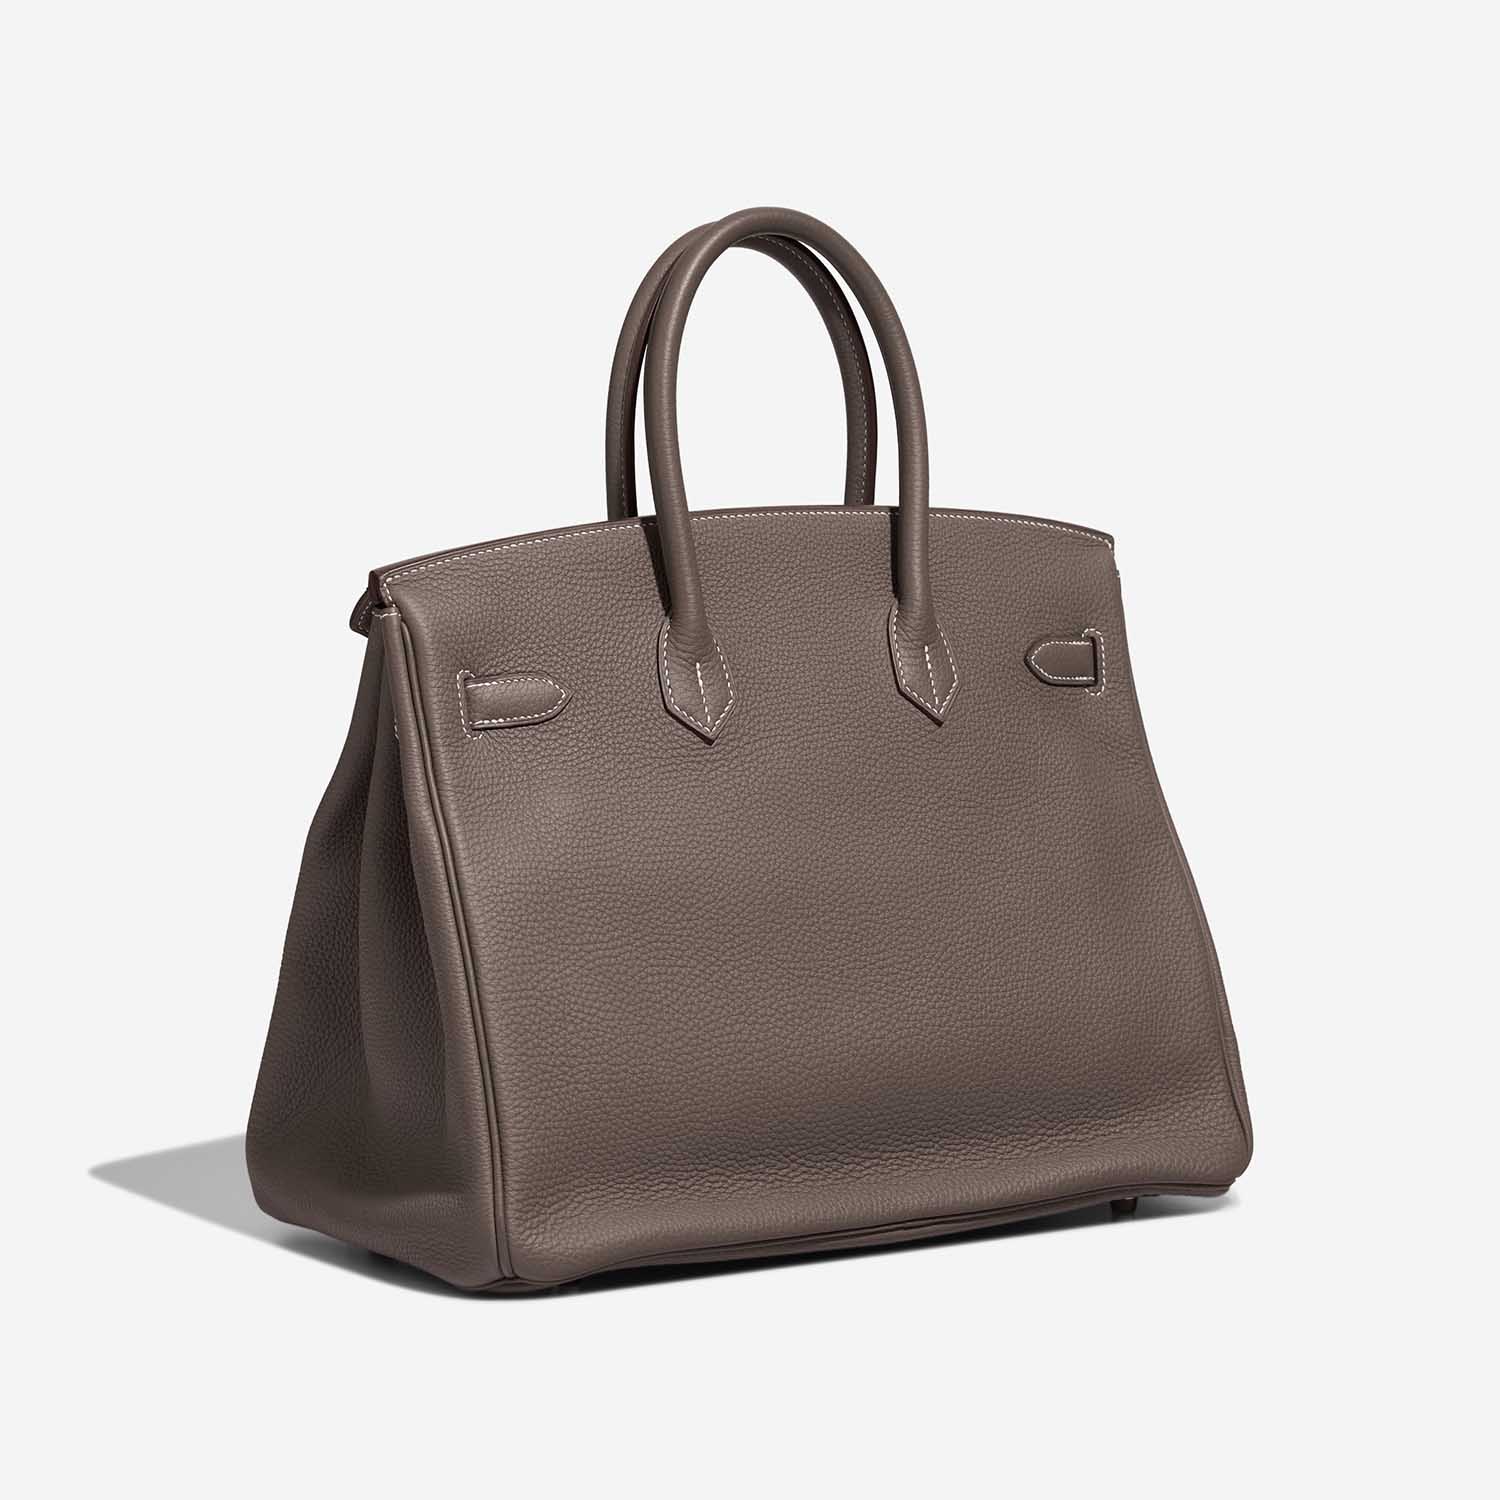 Hermès Birkin 35 Etoupe Side Back | Verkaufen Sie Ihre Designer-Tasche auf Saclab.com